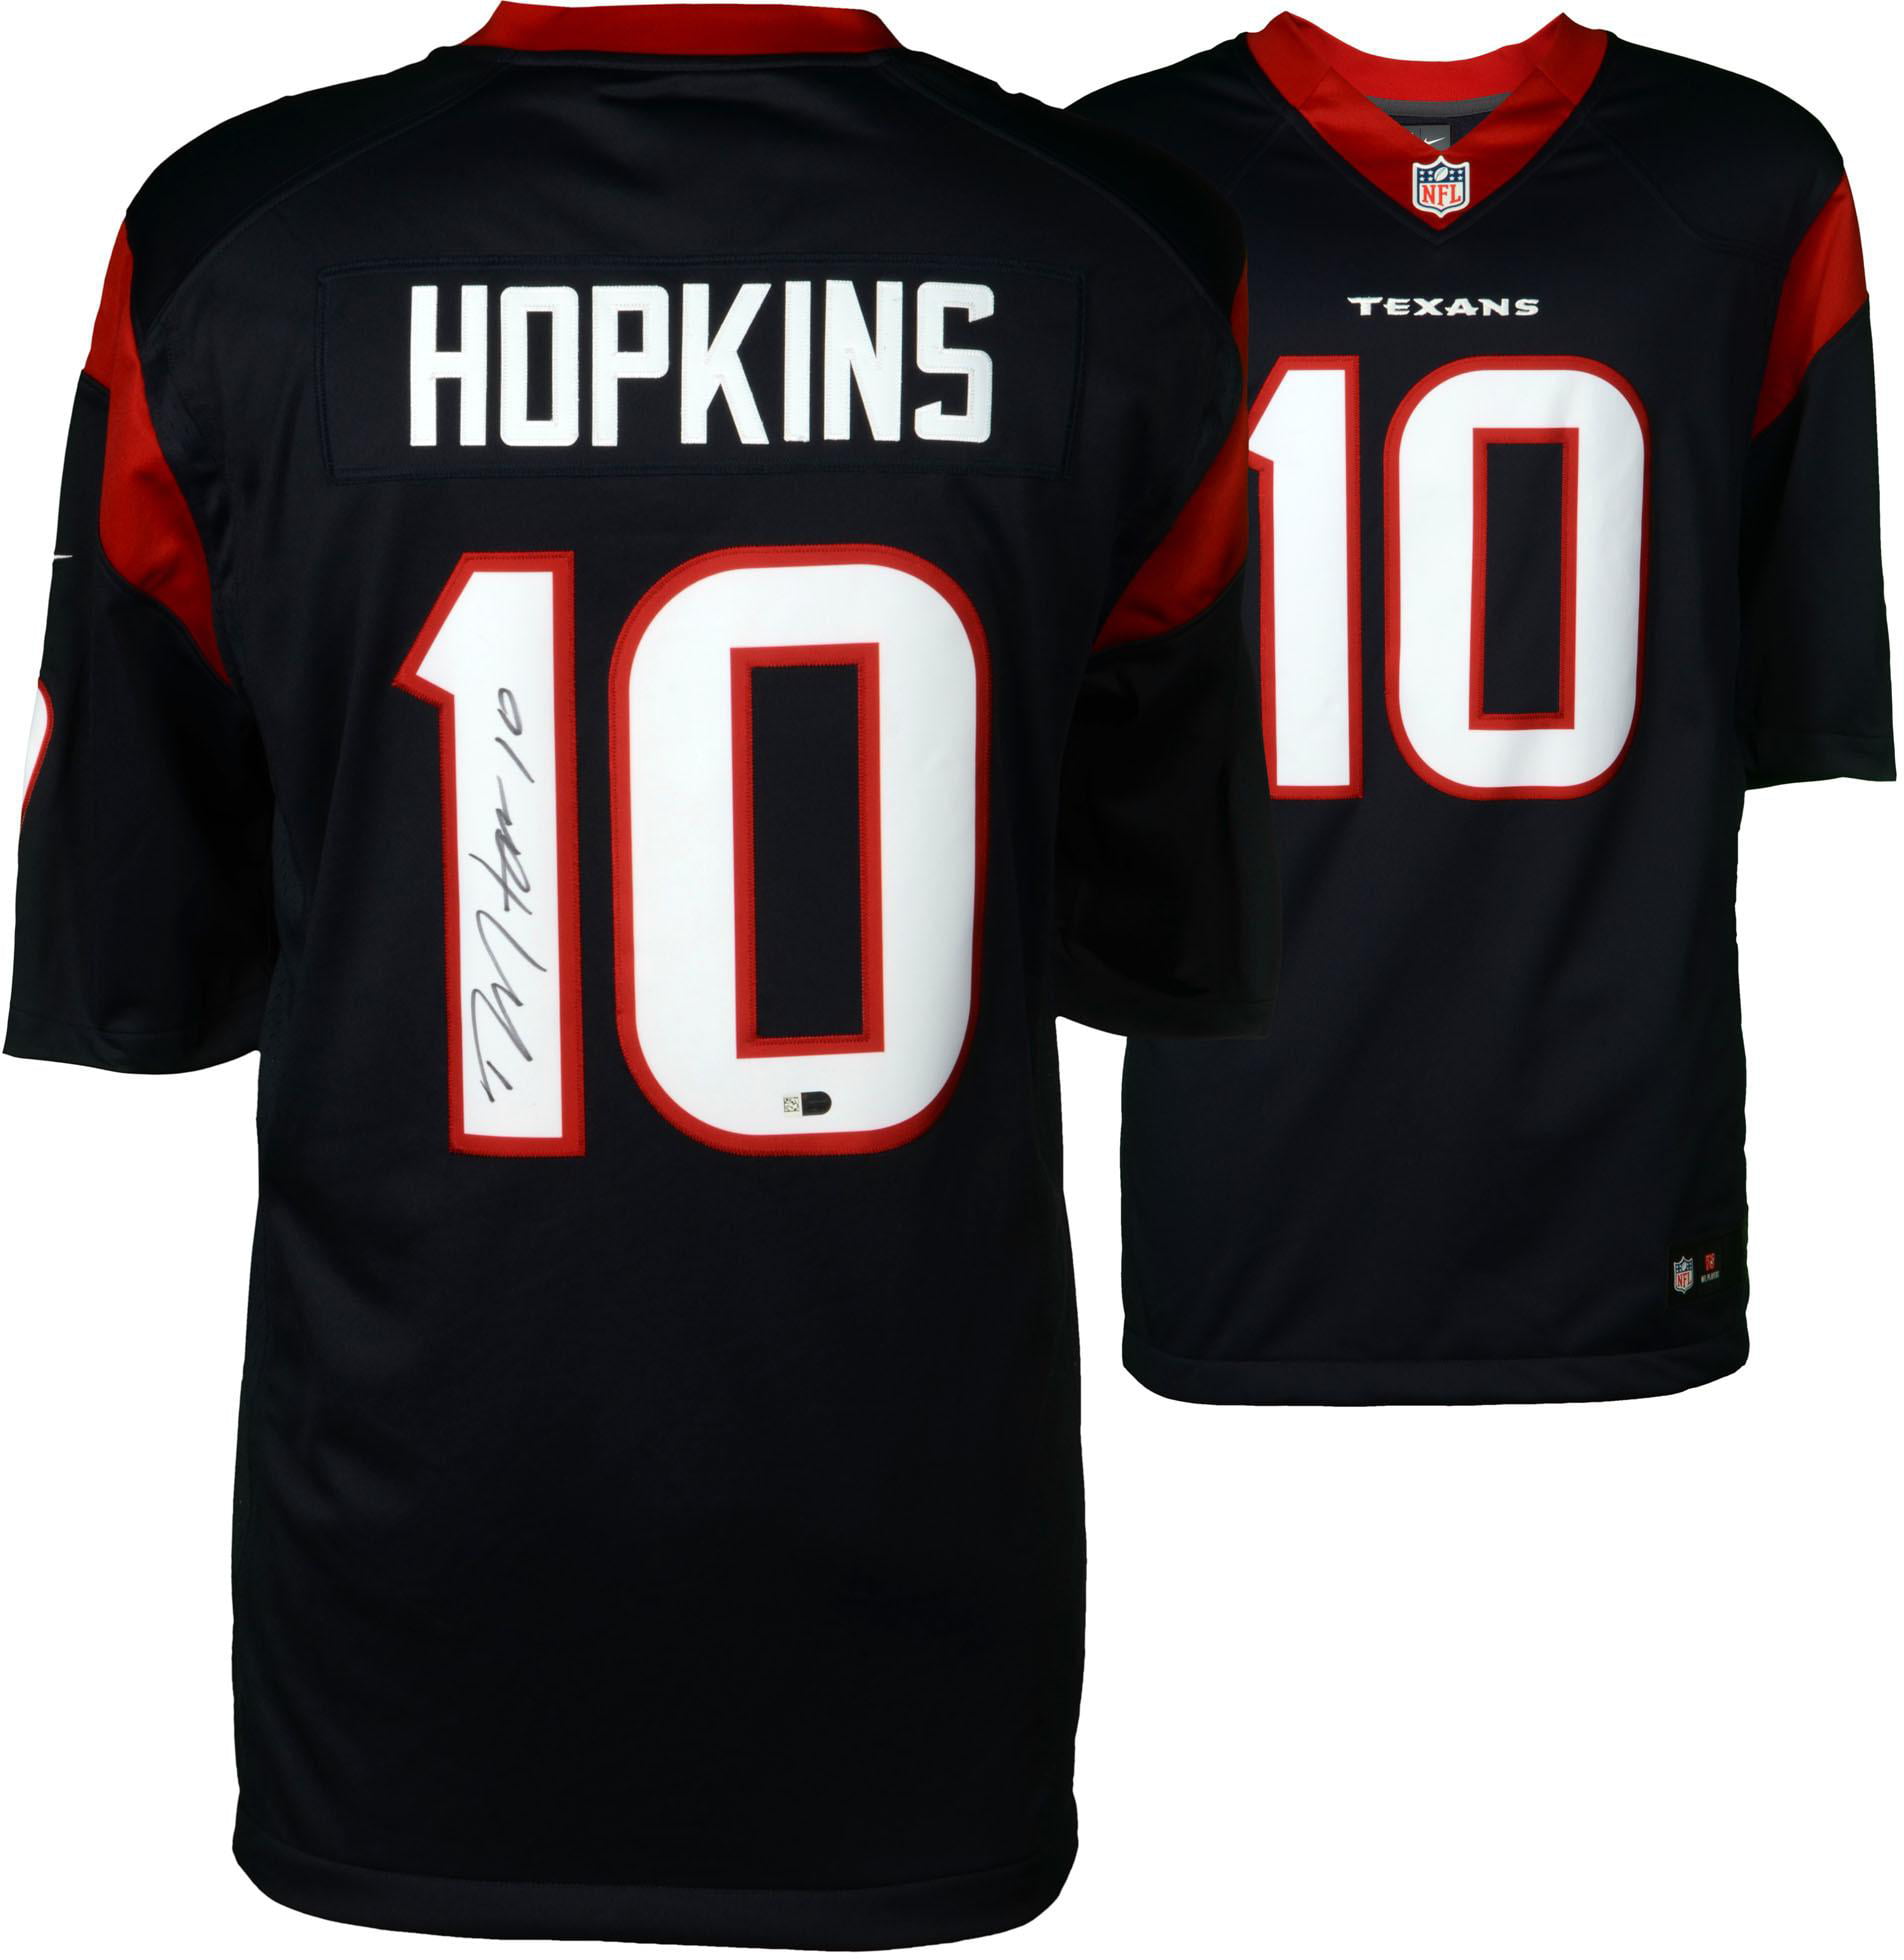 deandre hopkins signed jersey